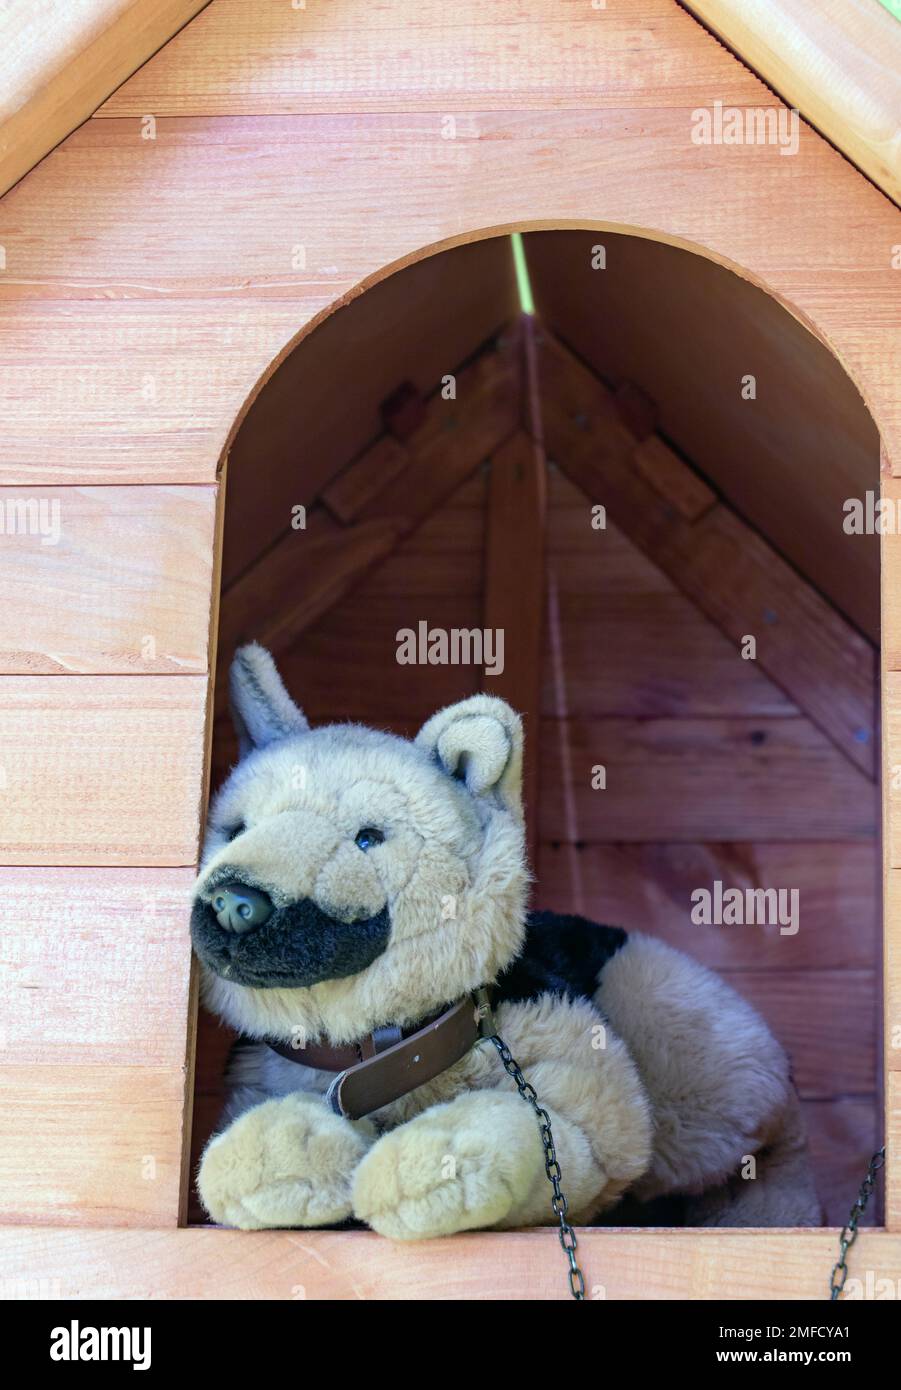 El perro de peluche se encuentra en la caseta Foto de stock